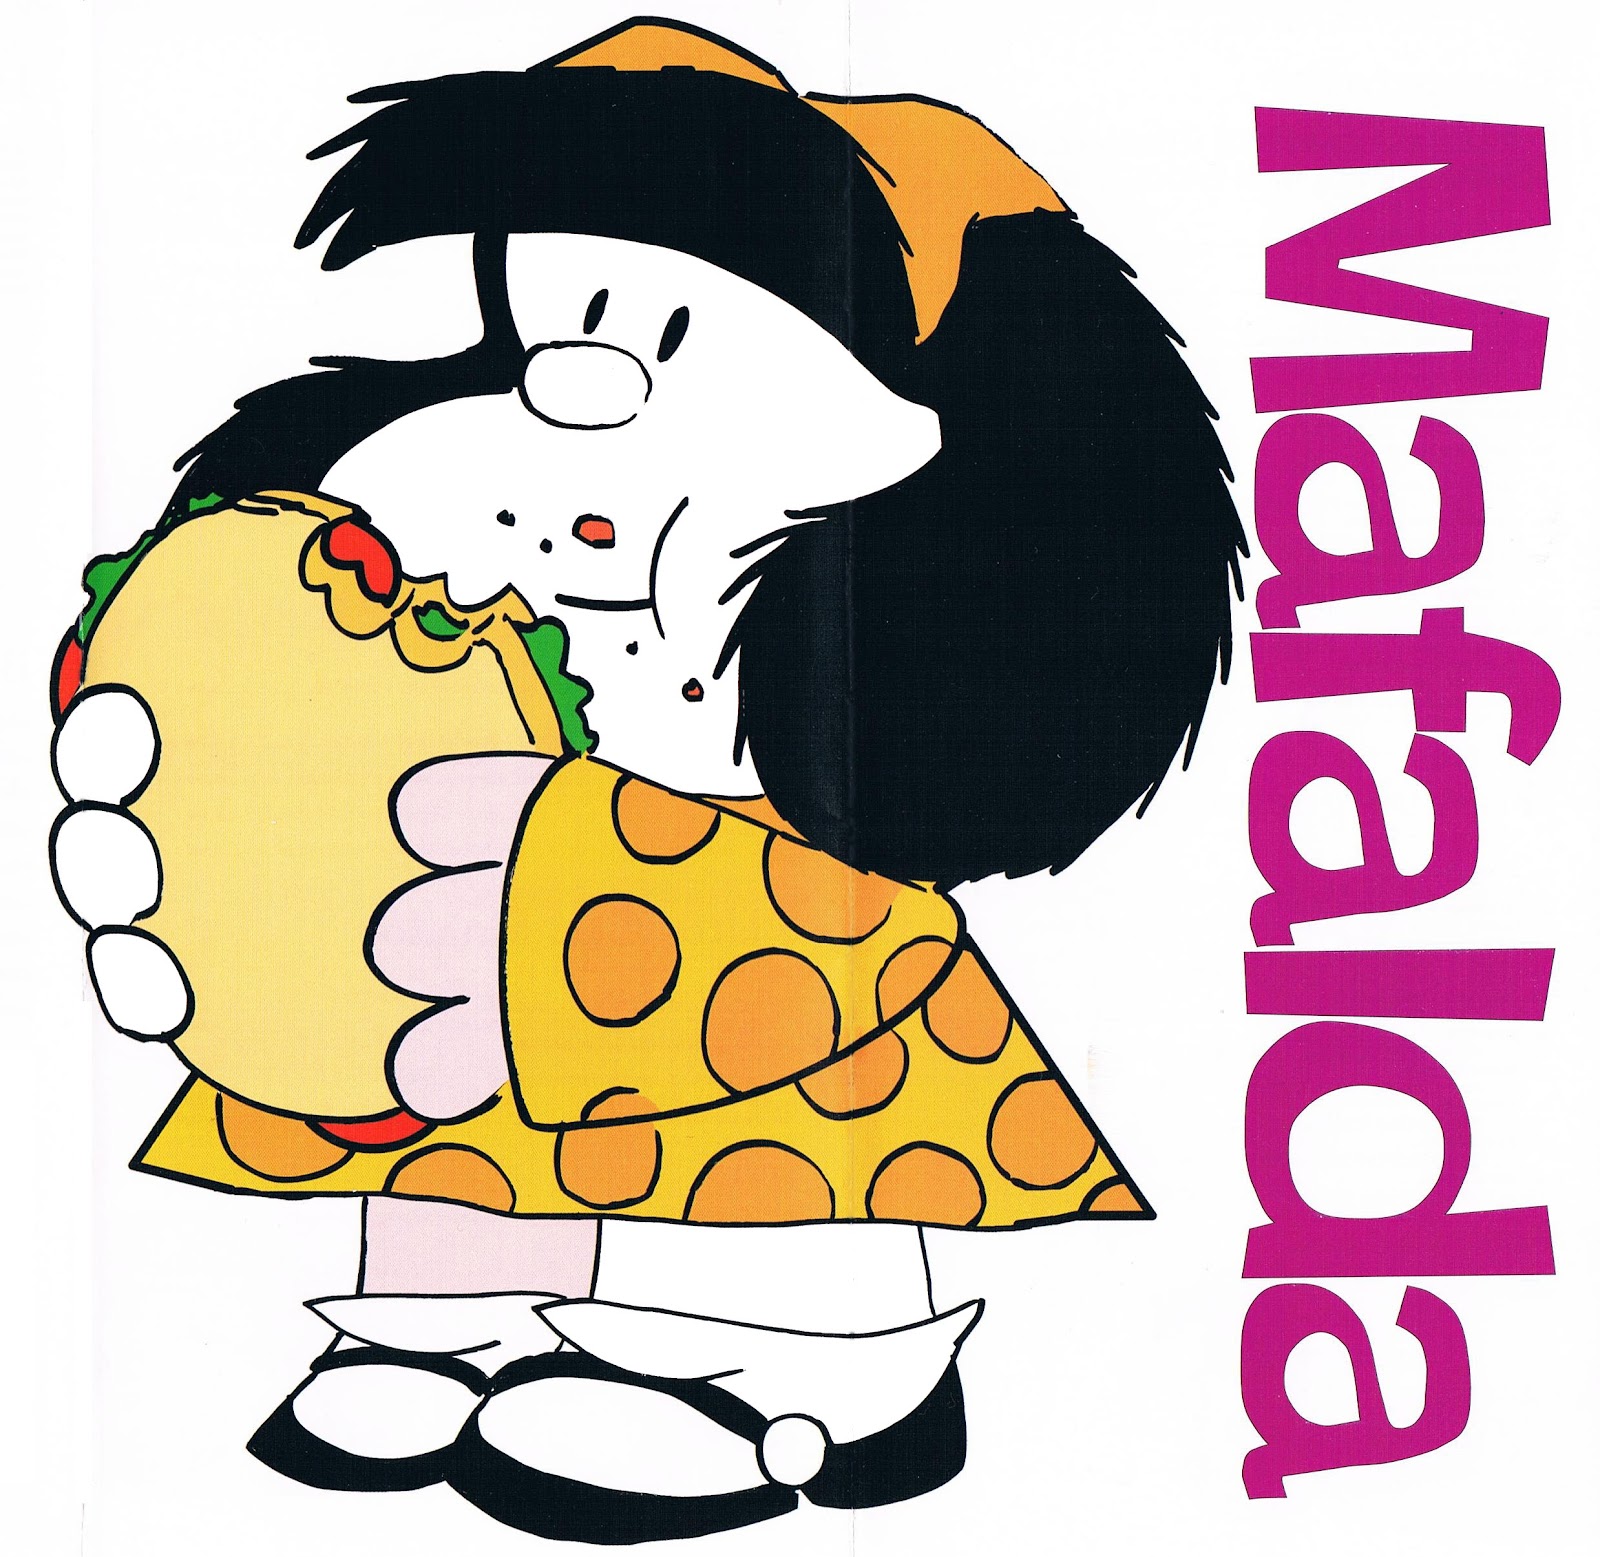 Comida a domicilio de restaurantes de Málaga: Mafalda, el 